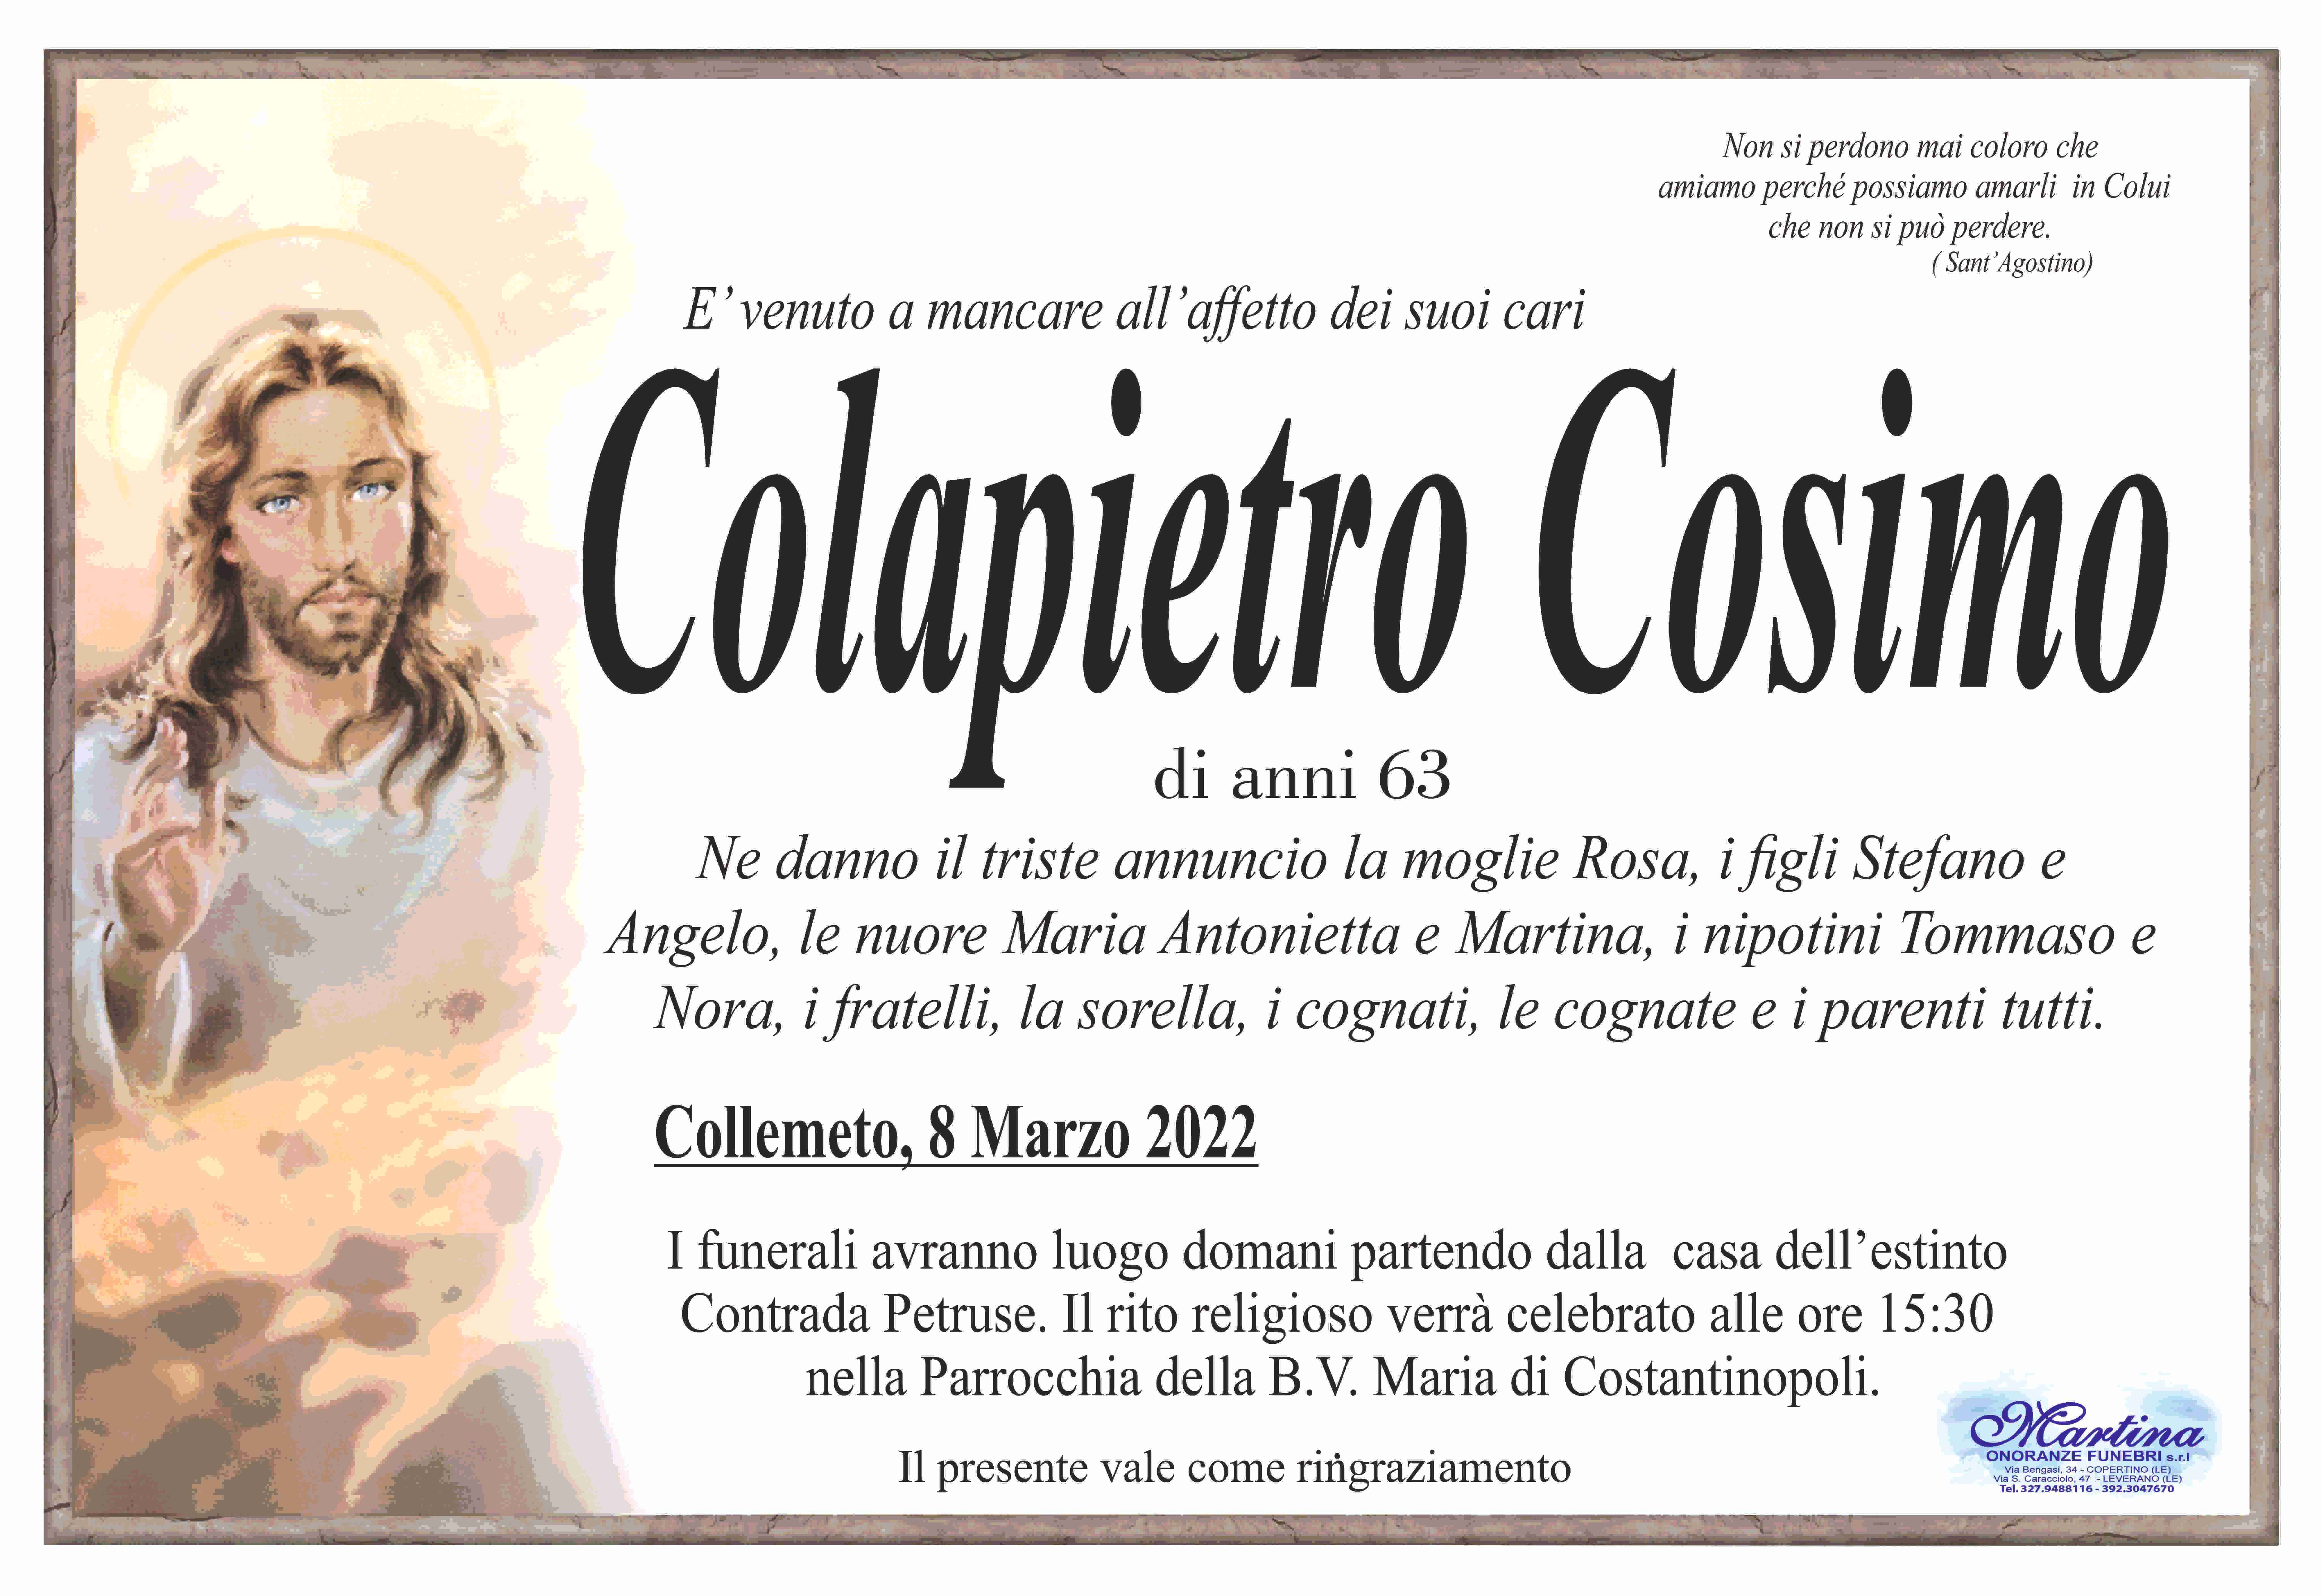 Cosimo Colapietro